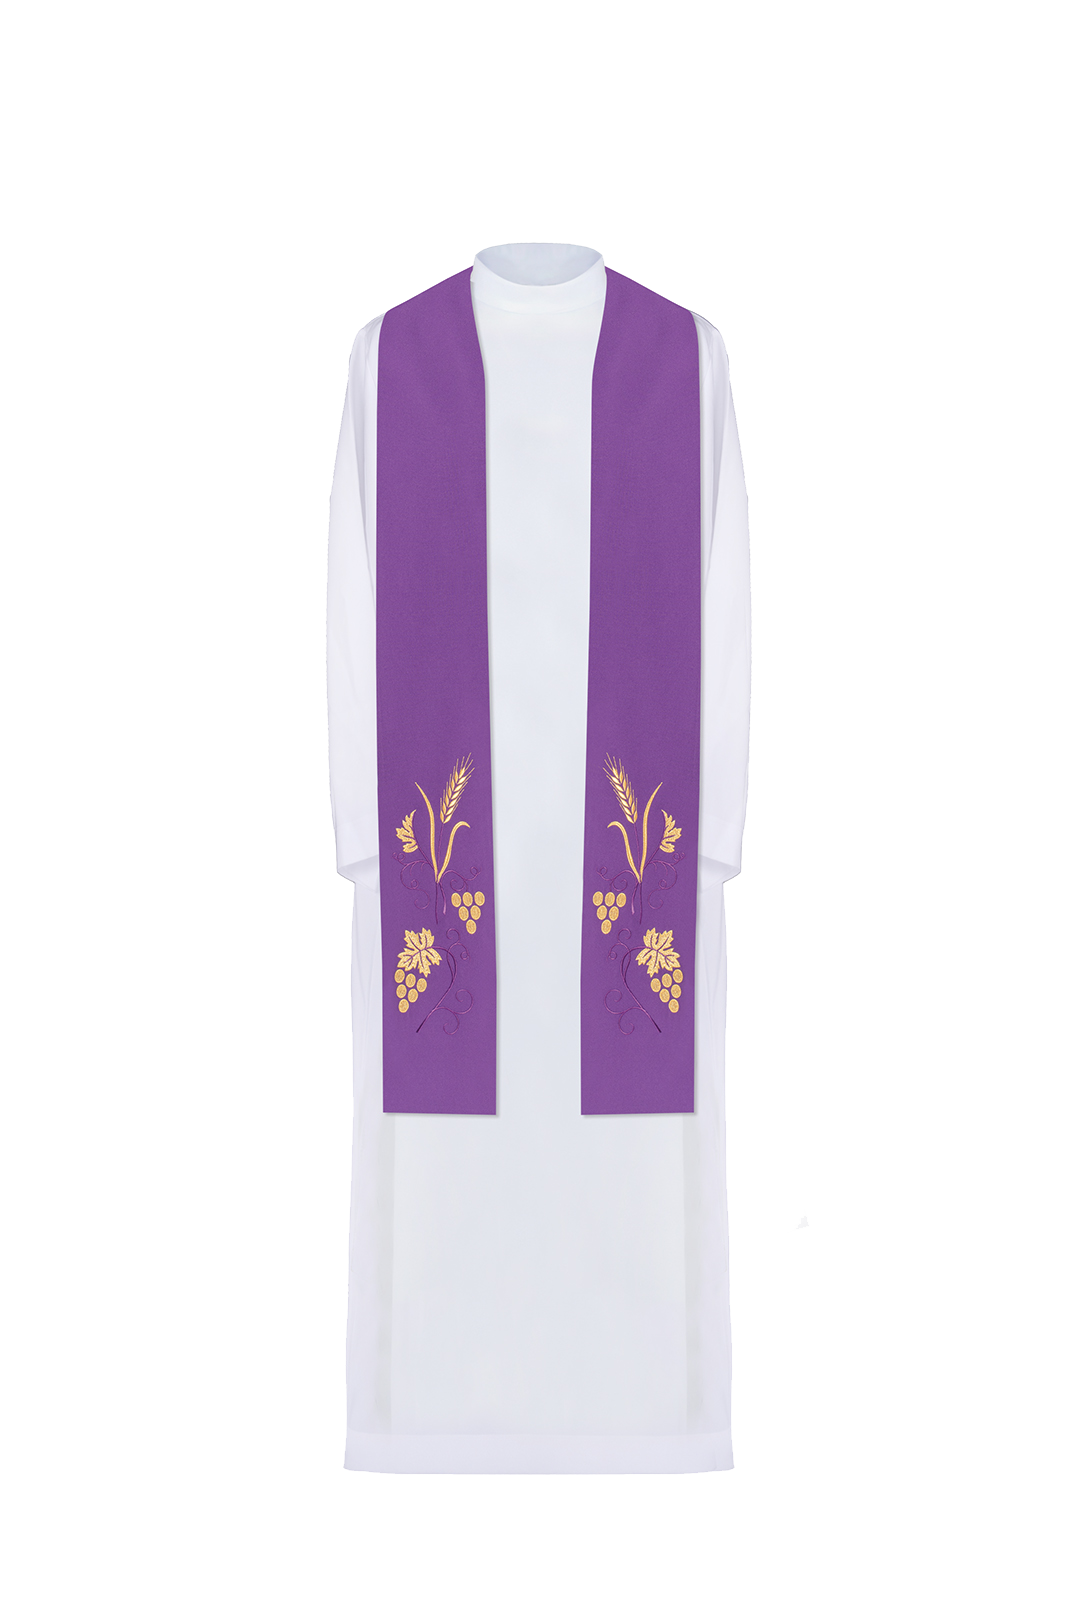 Stuła kapłańska haftowana winogrona i kłosy w kolorze fioletowym